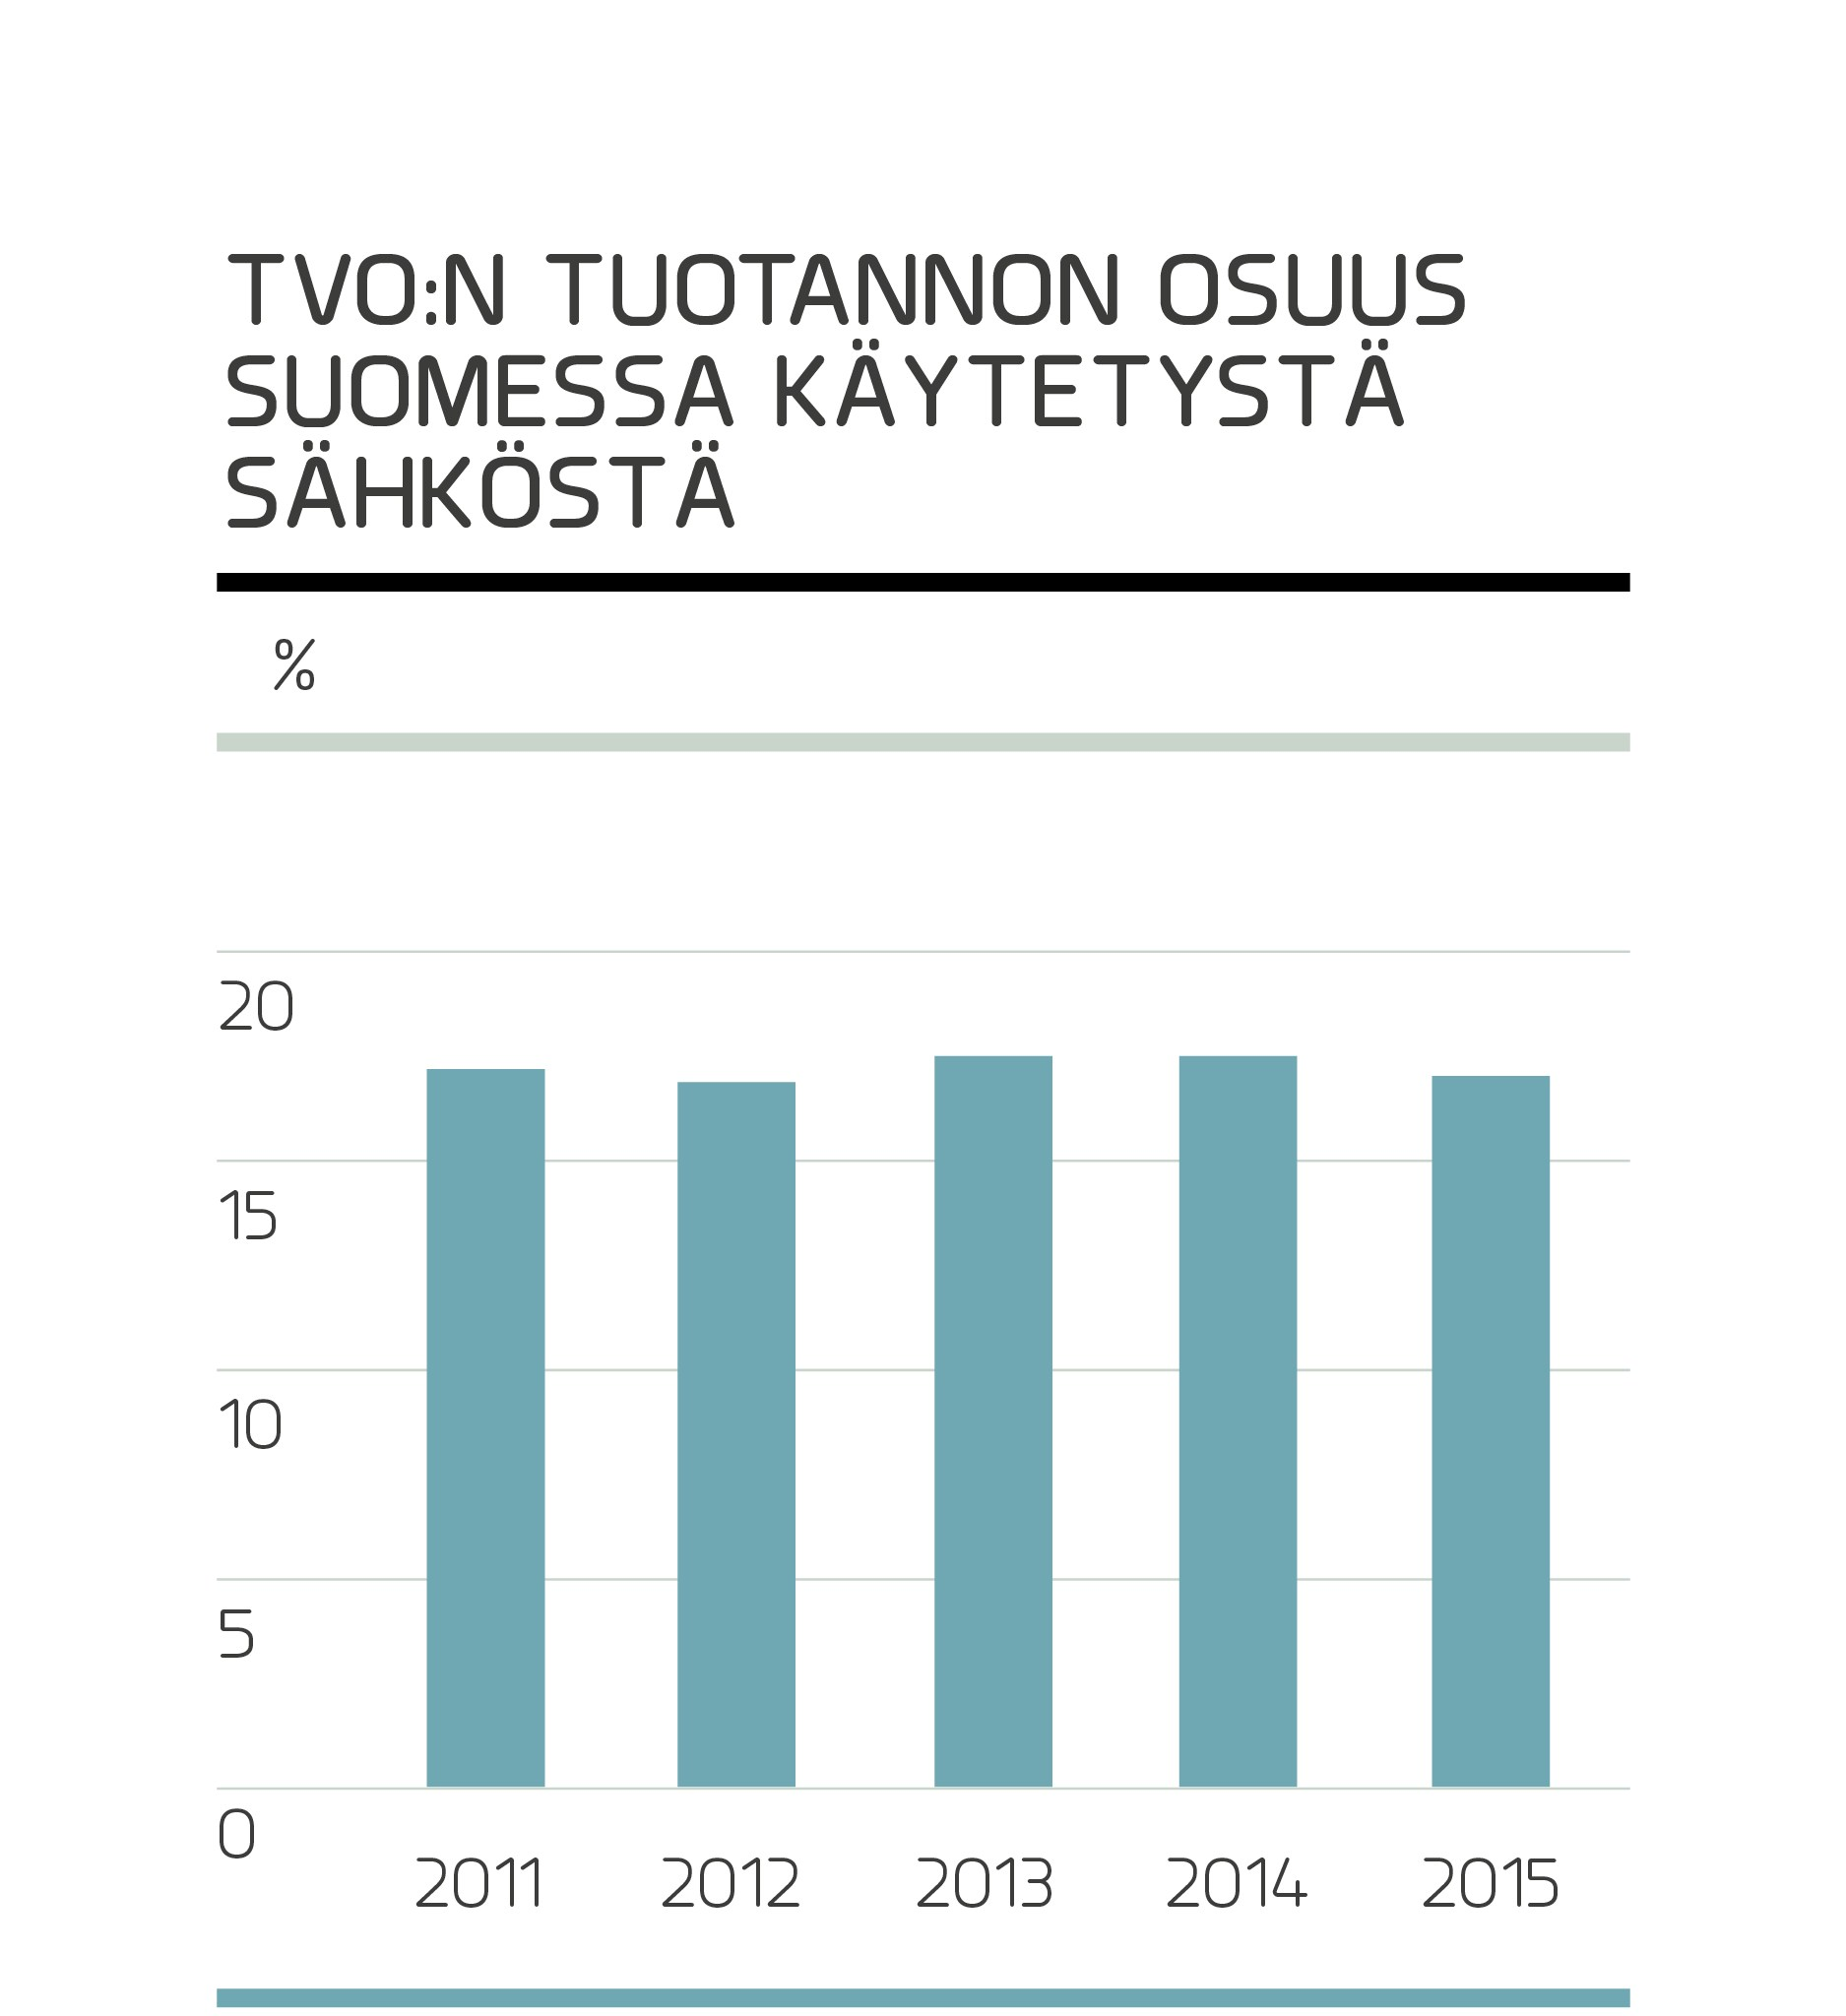 TVO Nuclear Services Oy (TVONS) on kokonaan TVO:n omistama tytäryhtiö. TVO:n ja Fortumin omistama yhteisyritys on Posiva Oy, josta TVO:n omistusosuus on 60 %.